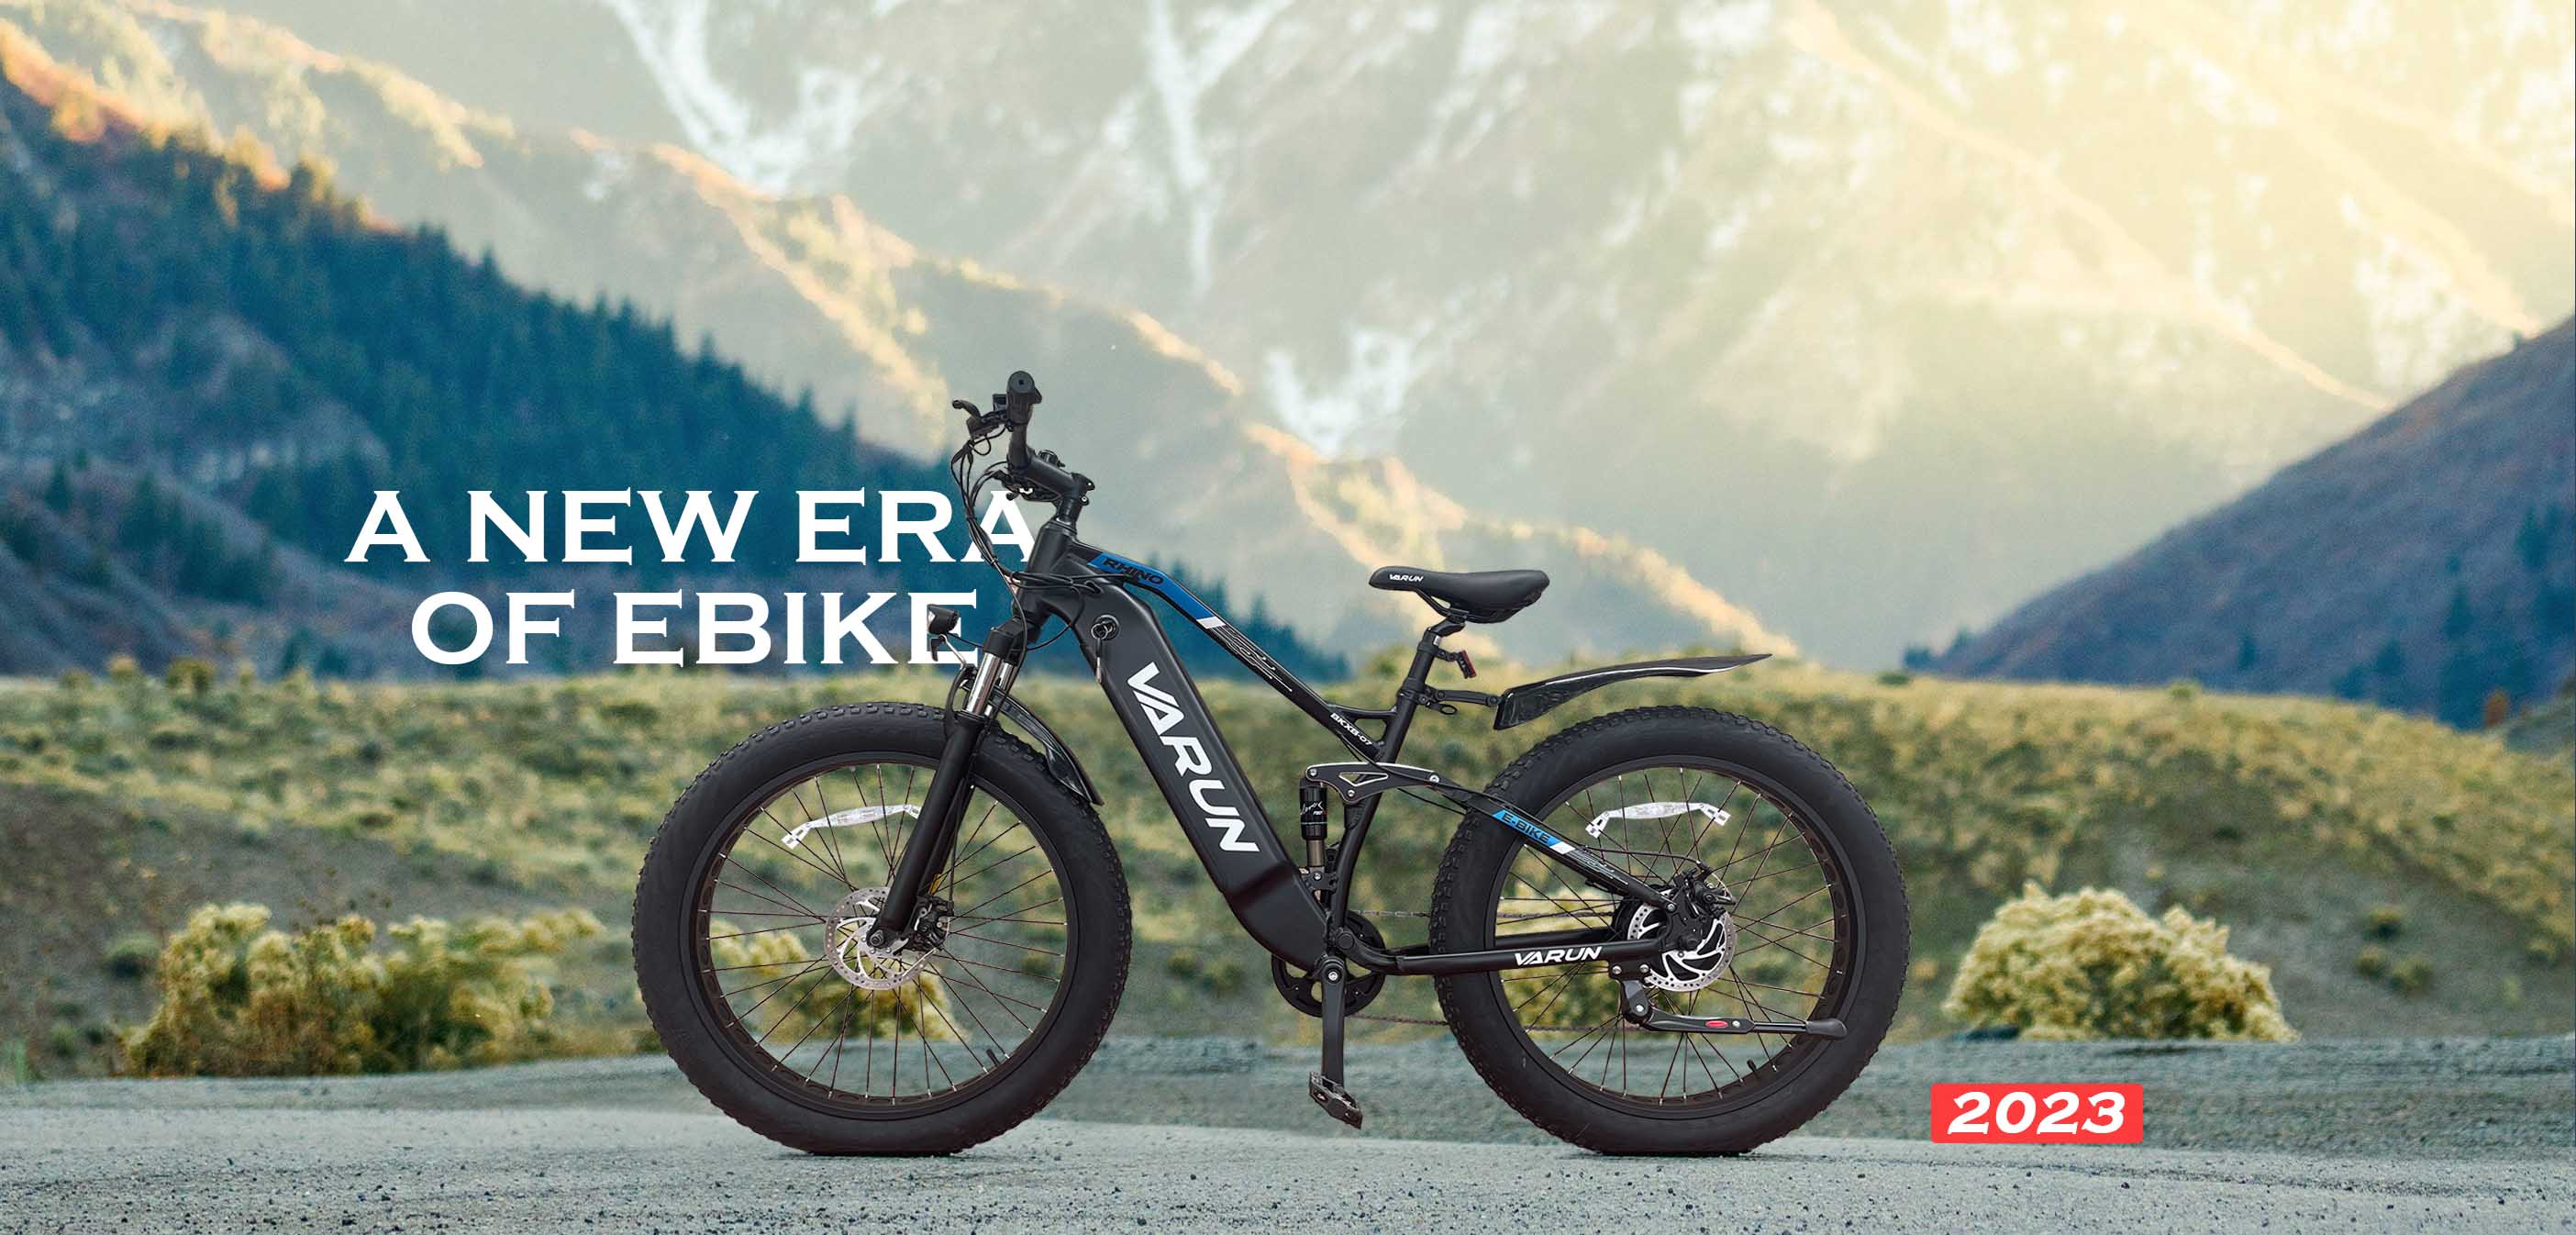 Why buy an Varun E-bike online?